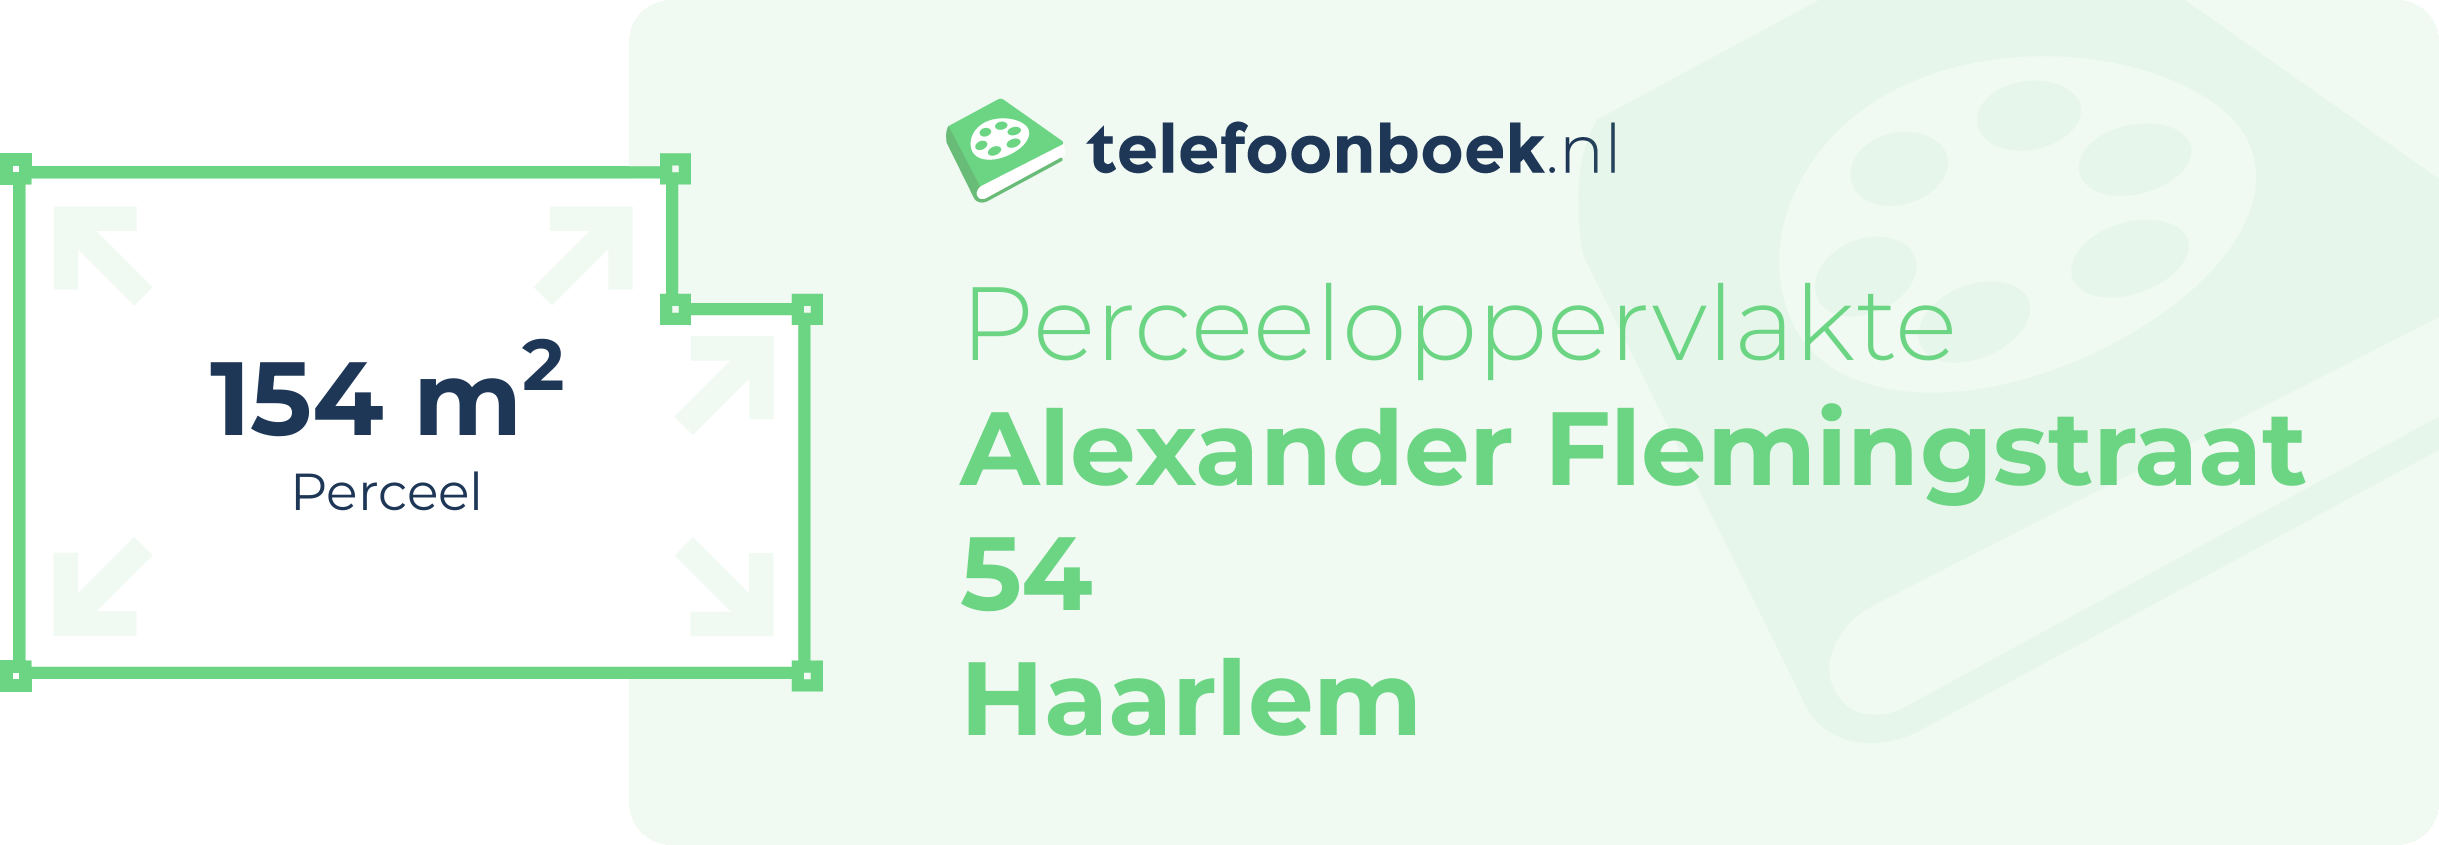 Perceeloppervlakte Alexander Flemingstraat 54 Haarlem